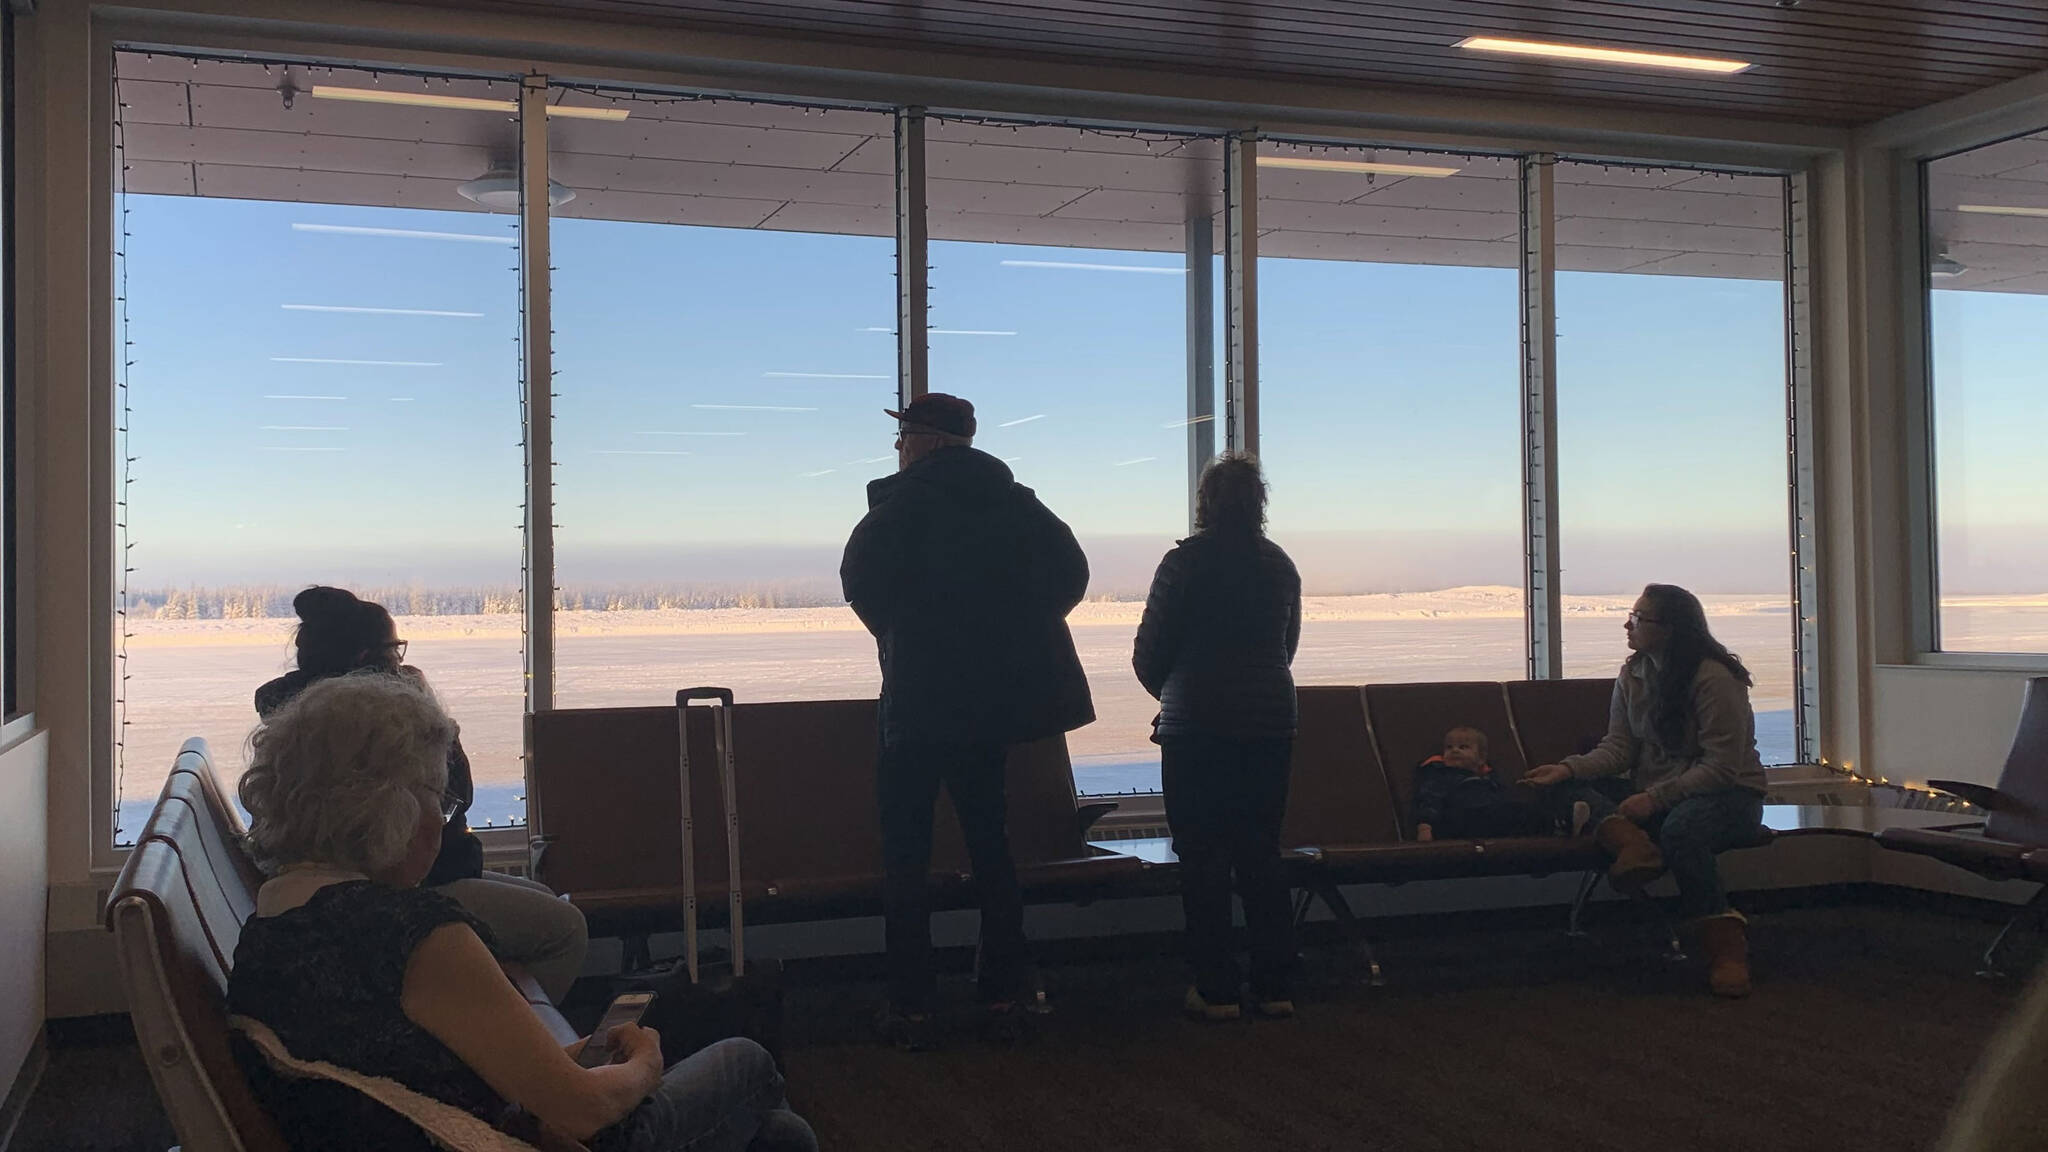 People wait for planes at Kenai Municipal Airport on Monday, Dec. 19, 2022 in Kenai, Alaska. (Ashlyn O'Hara/Peninsula Clarion)